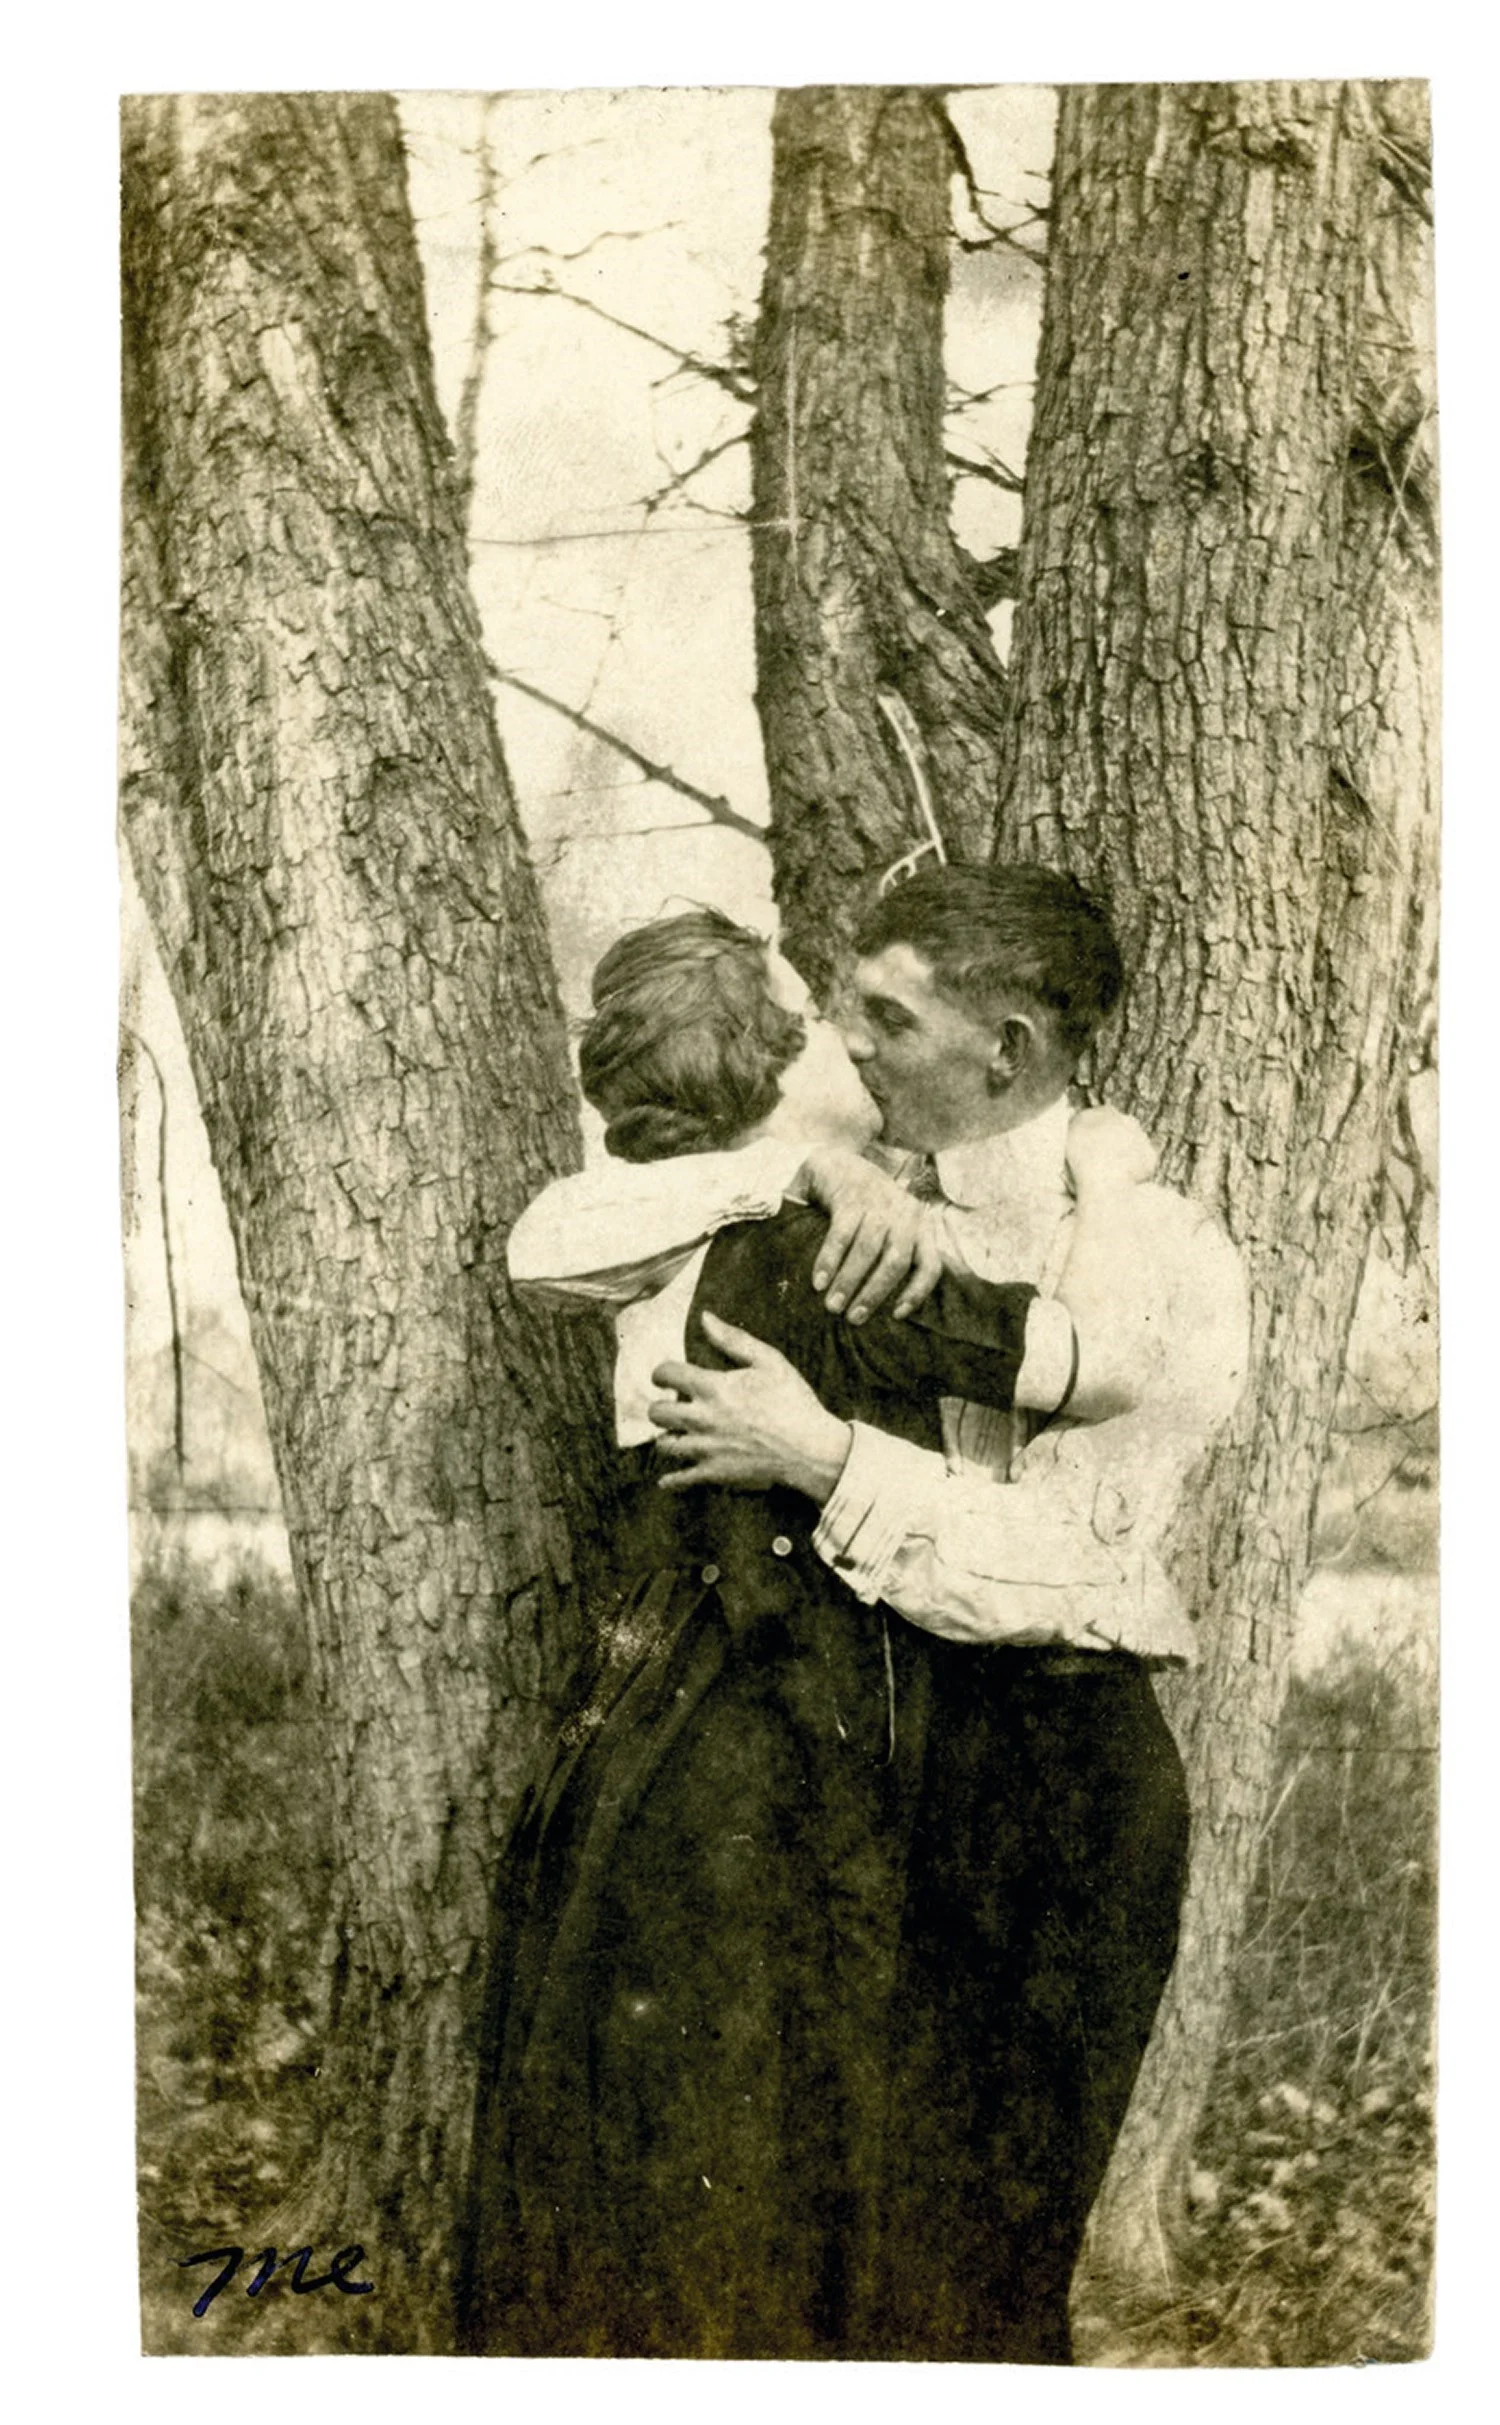 Машина времени: архивные фото о том, как целовались влюбленные 100 лет назад - фото 486025